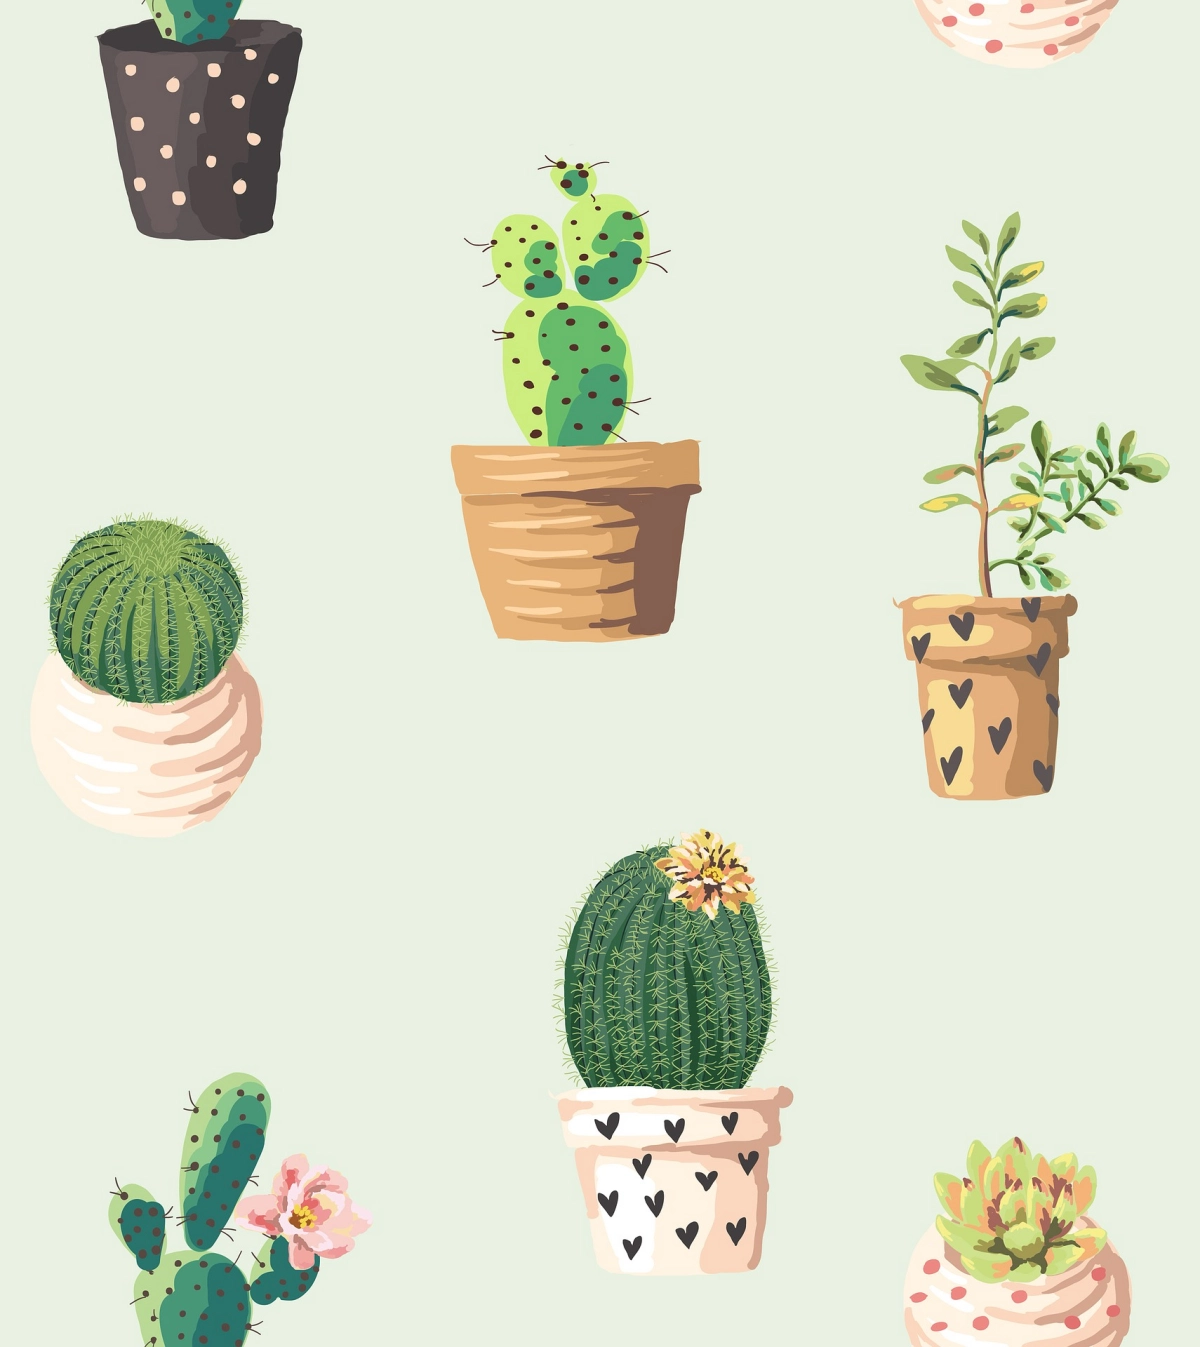 dessin cactus plantes vertes fond ecran cute arriere plan vert pastel